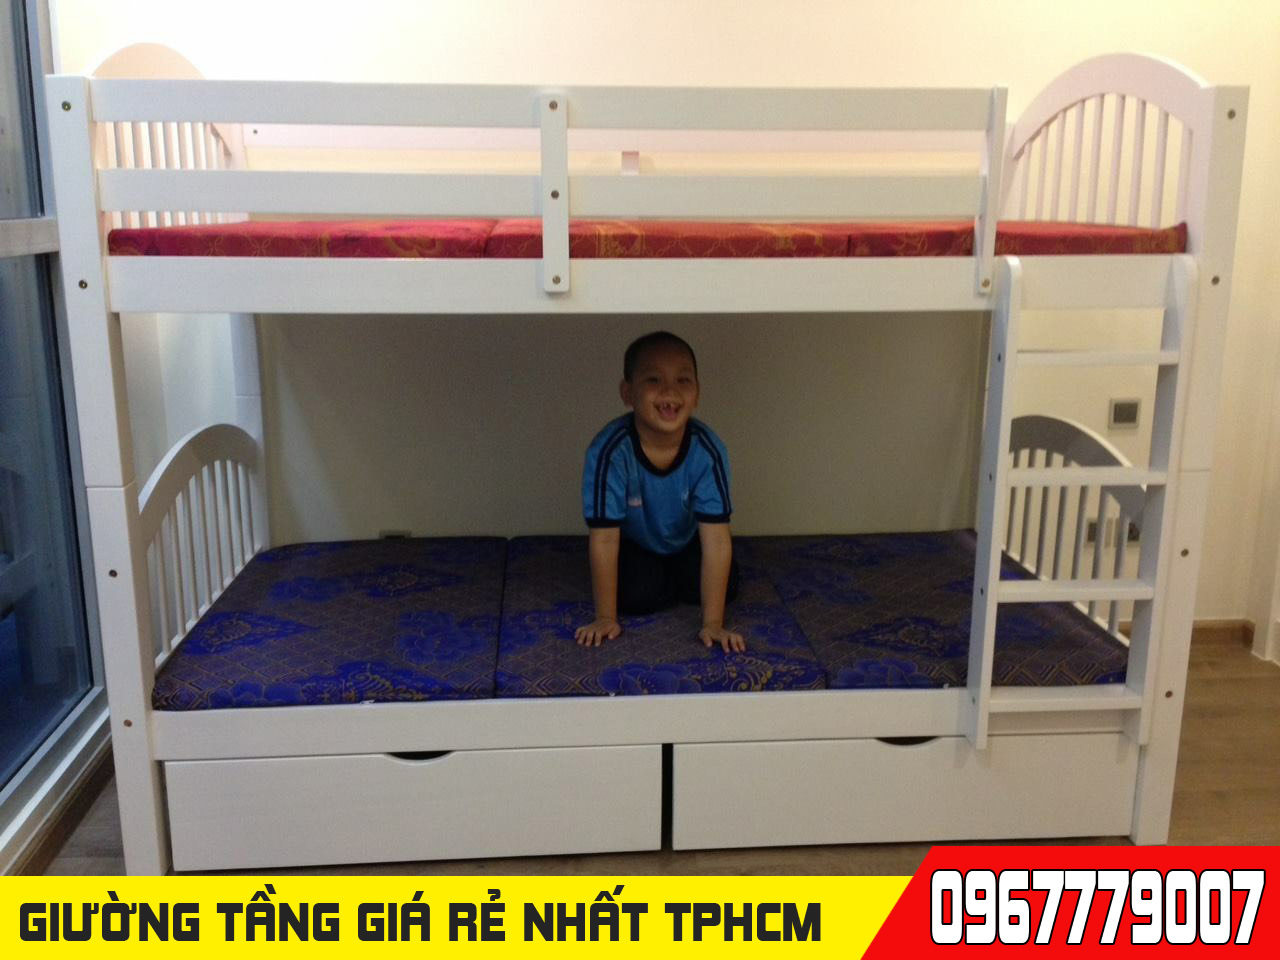 Kết cấu chi tiết và giá bán của giường 2 tầng 1mx2m MS 025 tại TPHCM